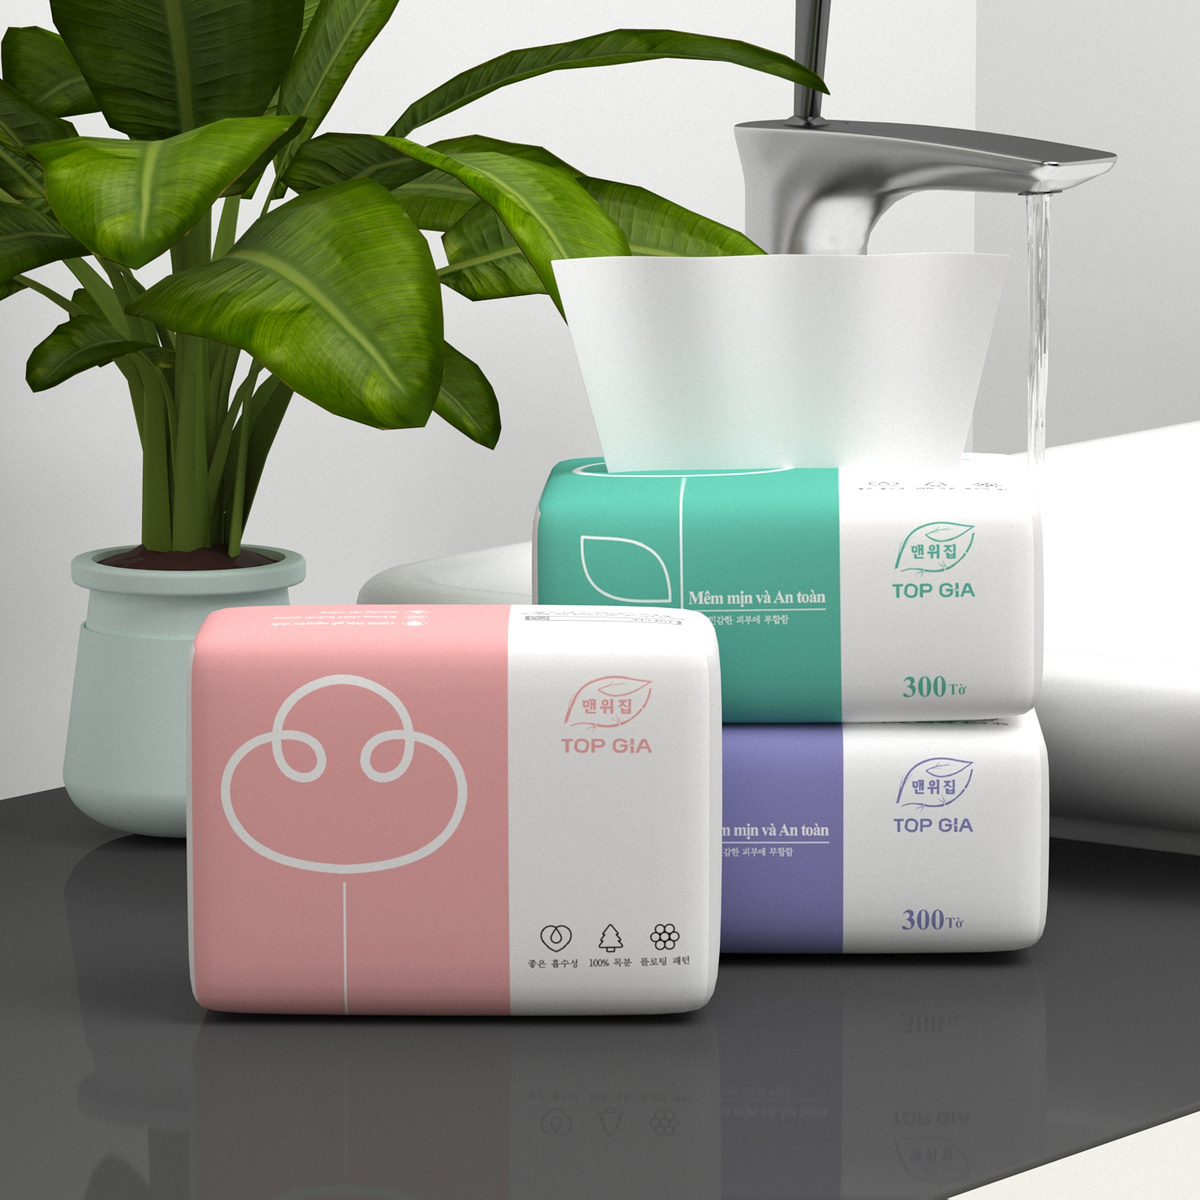 tissue tissue paper Tissue Box tissue box design Wet wipes wet wipes packaging tissues packaging